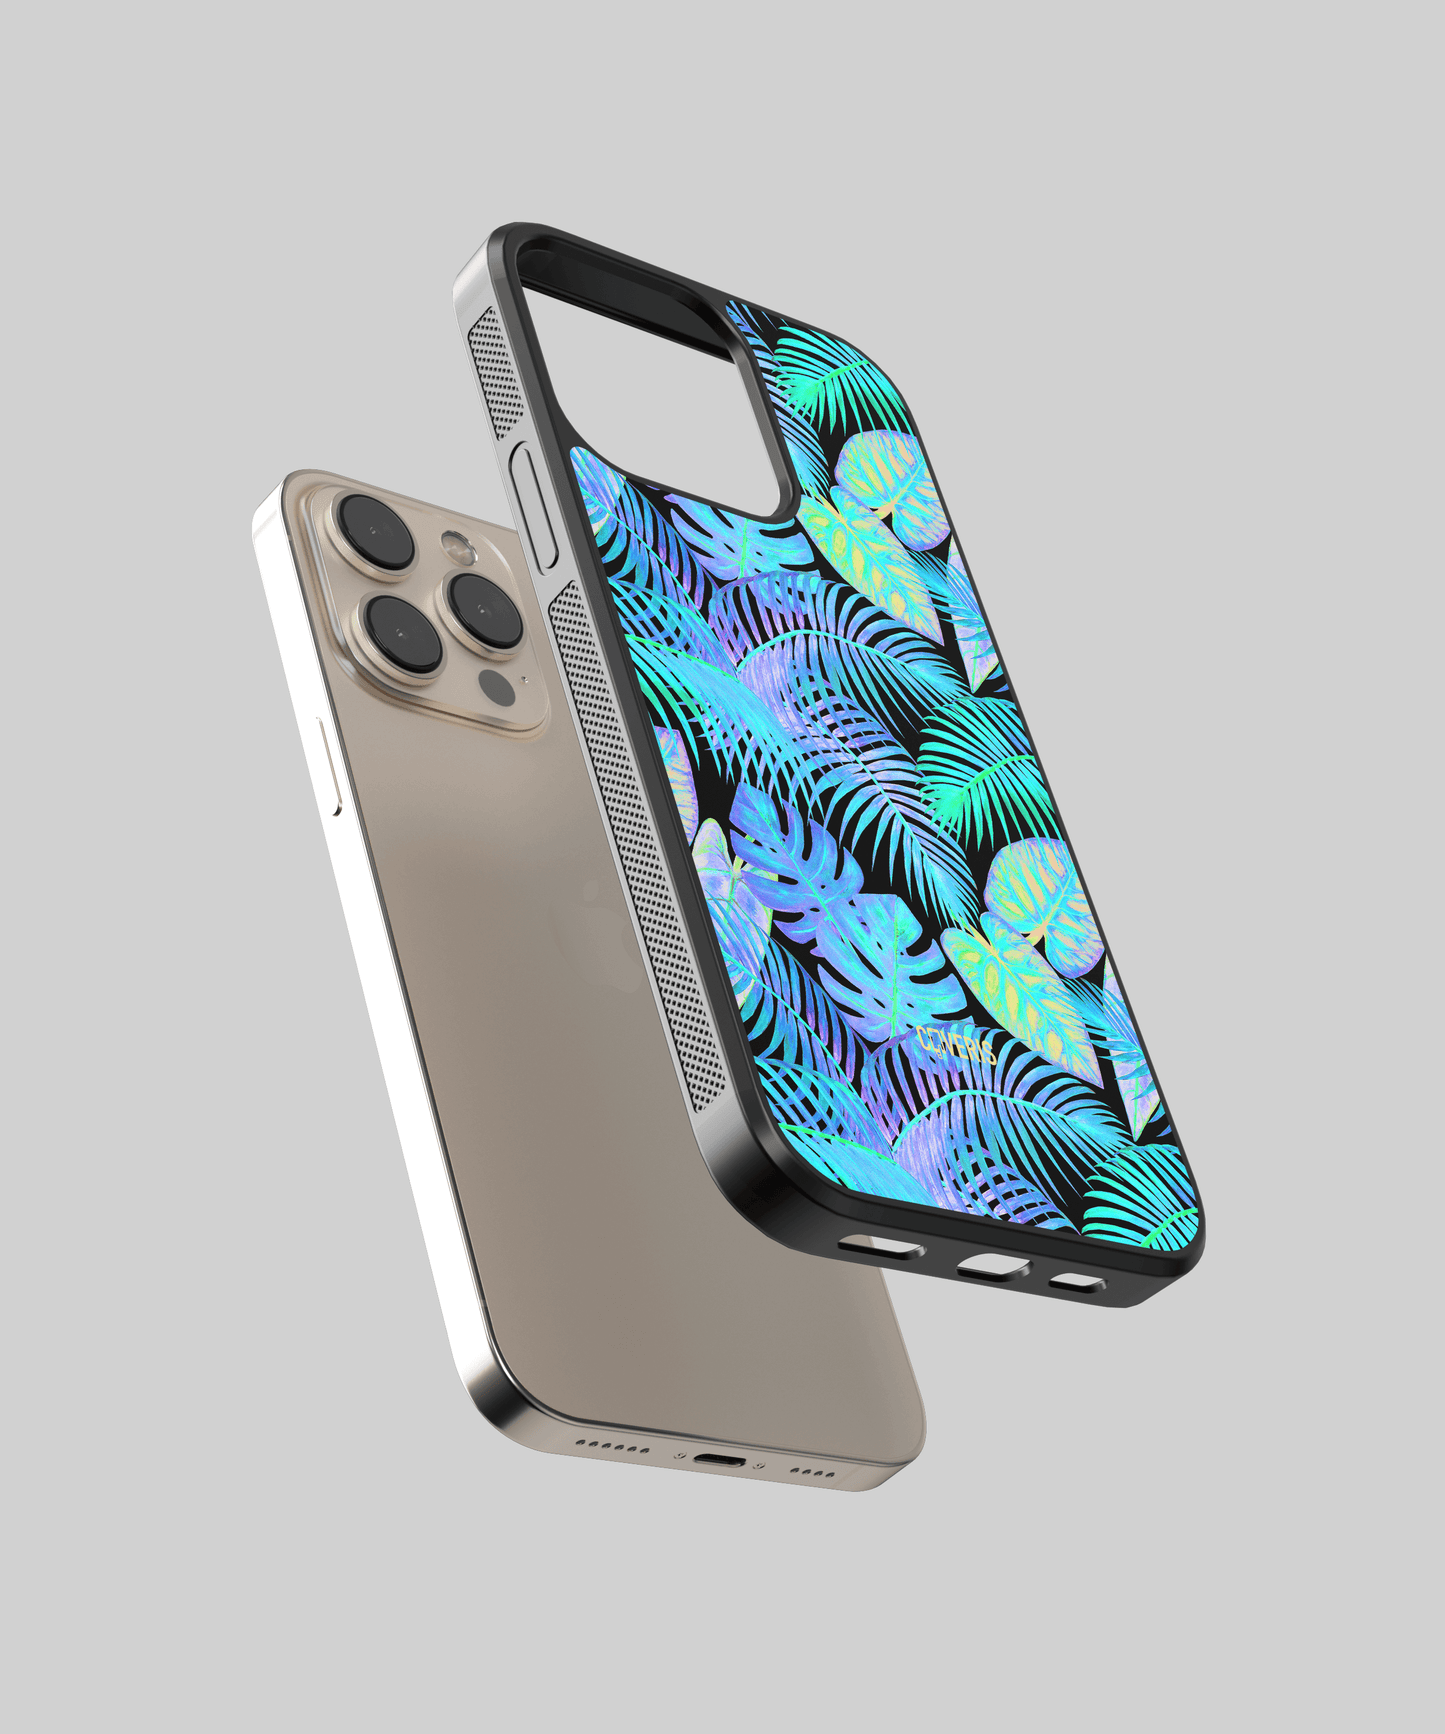 Tropic - Samsung Galaxy A22 4G phone case